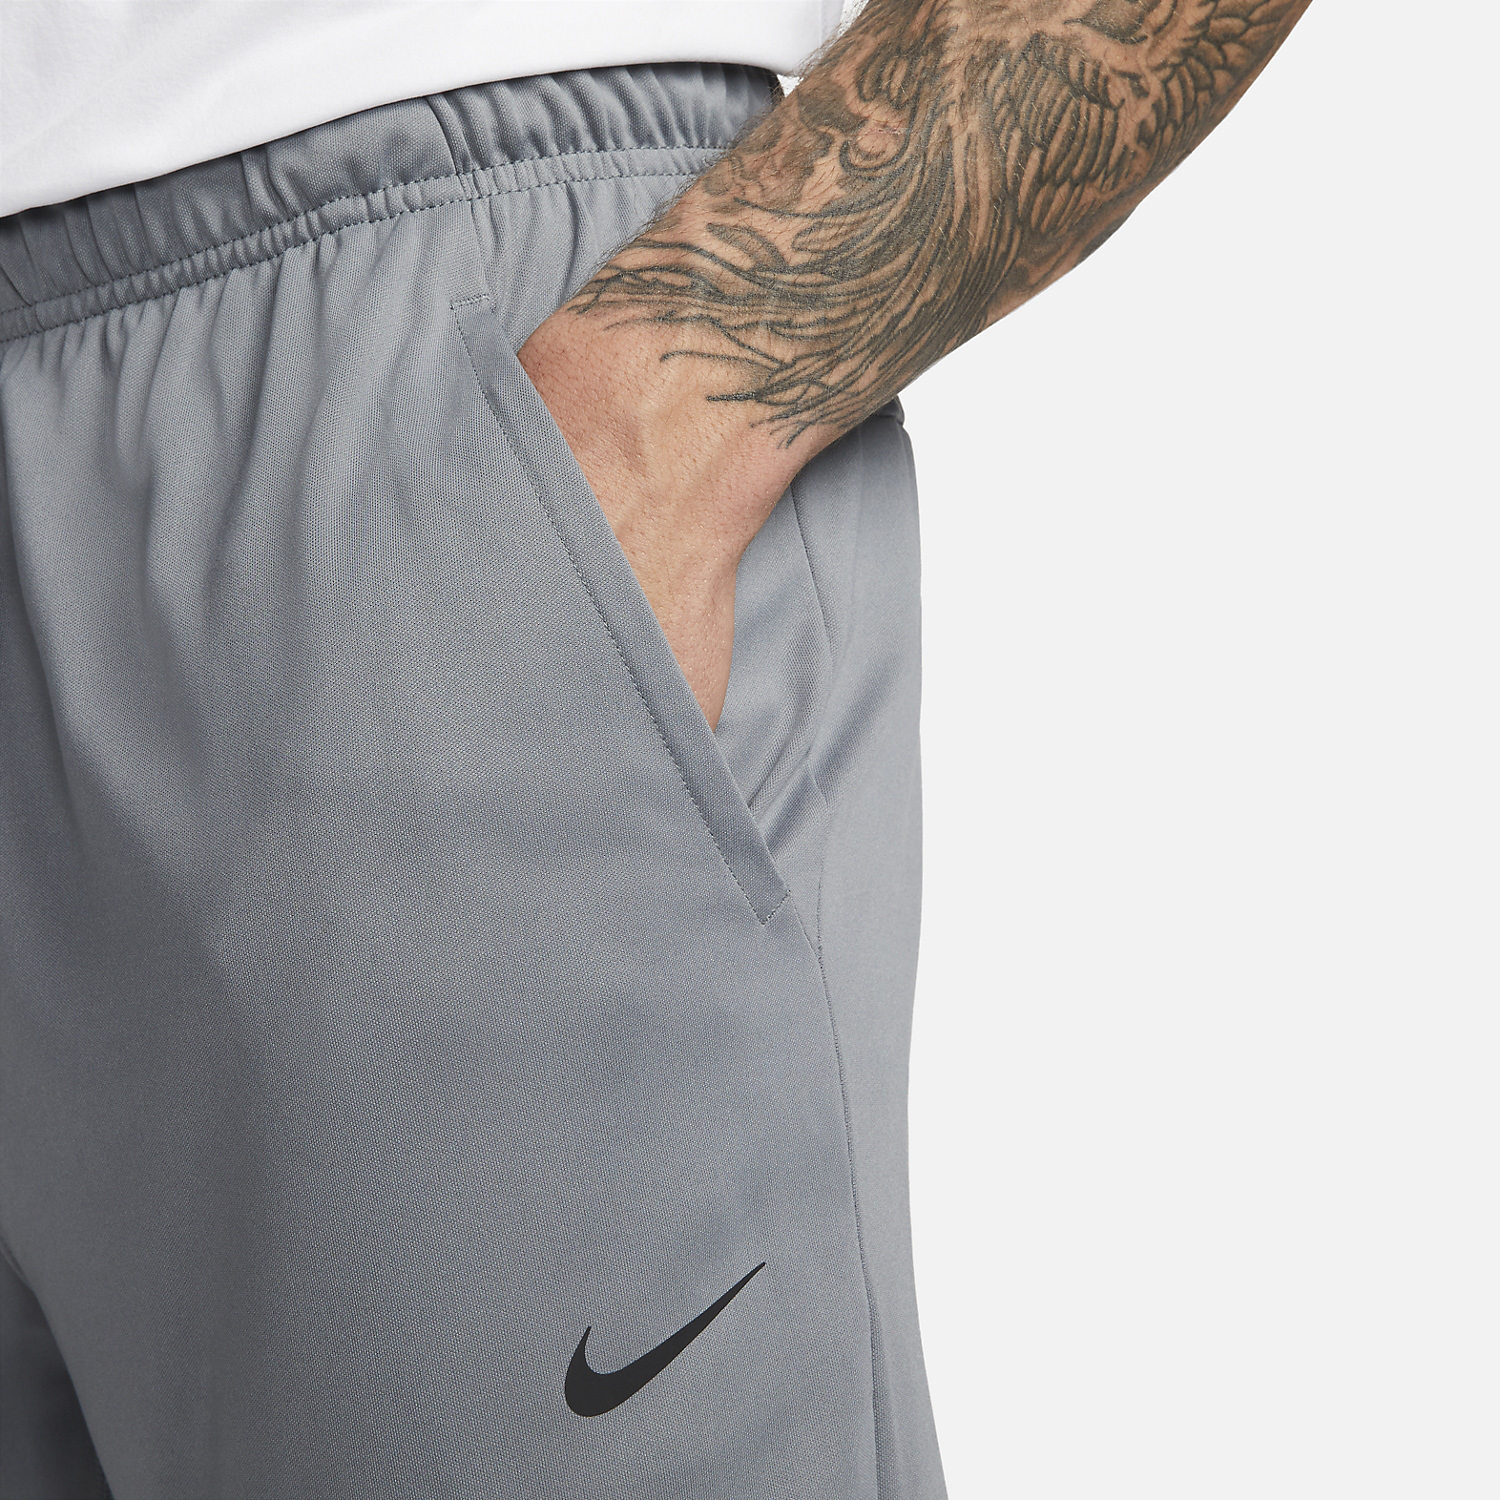 Nike Dri-FIT Totality Pantaloni - Smoke Grey/Black